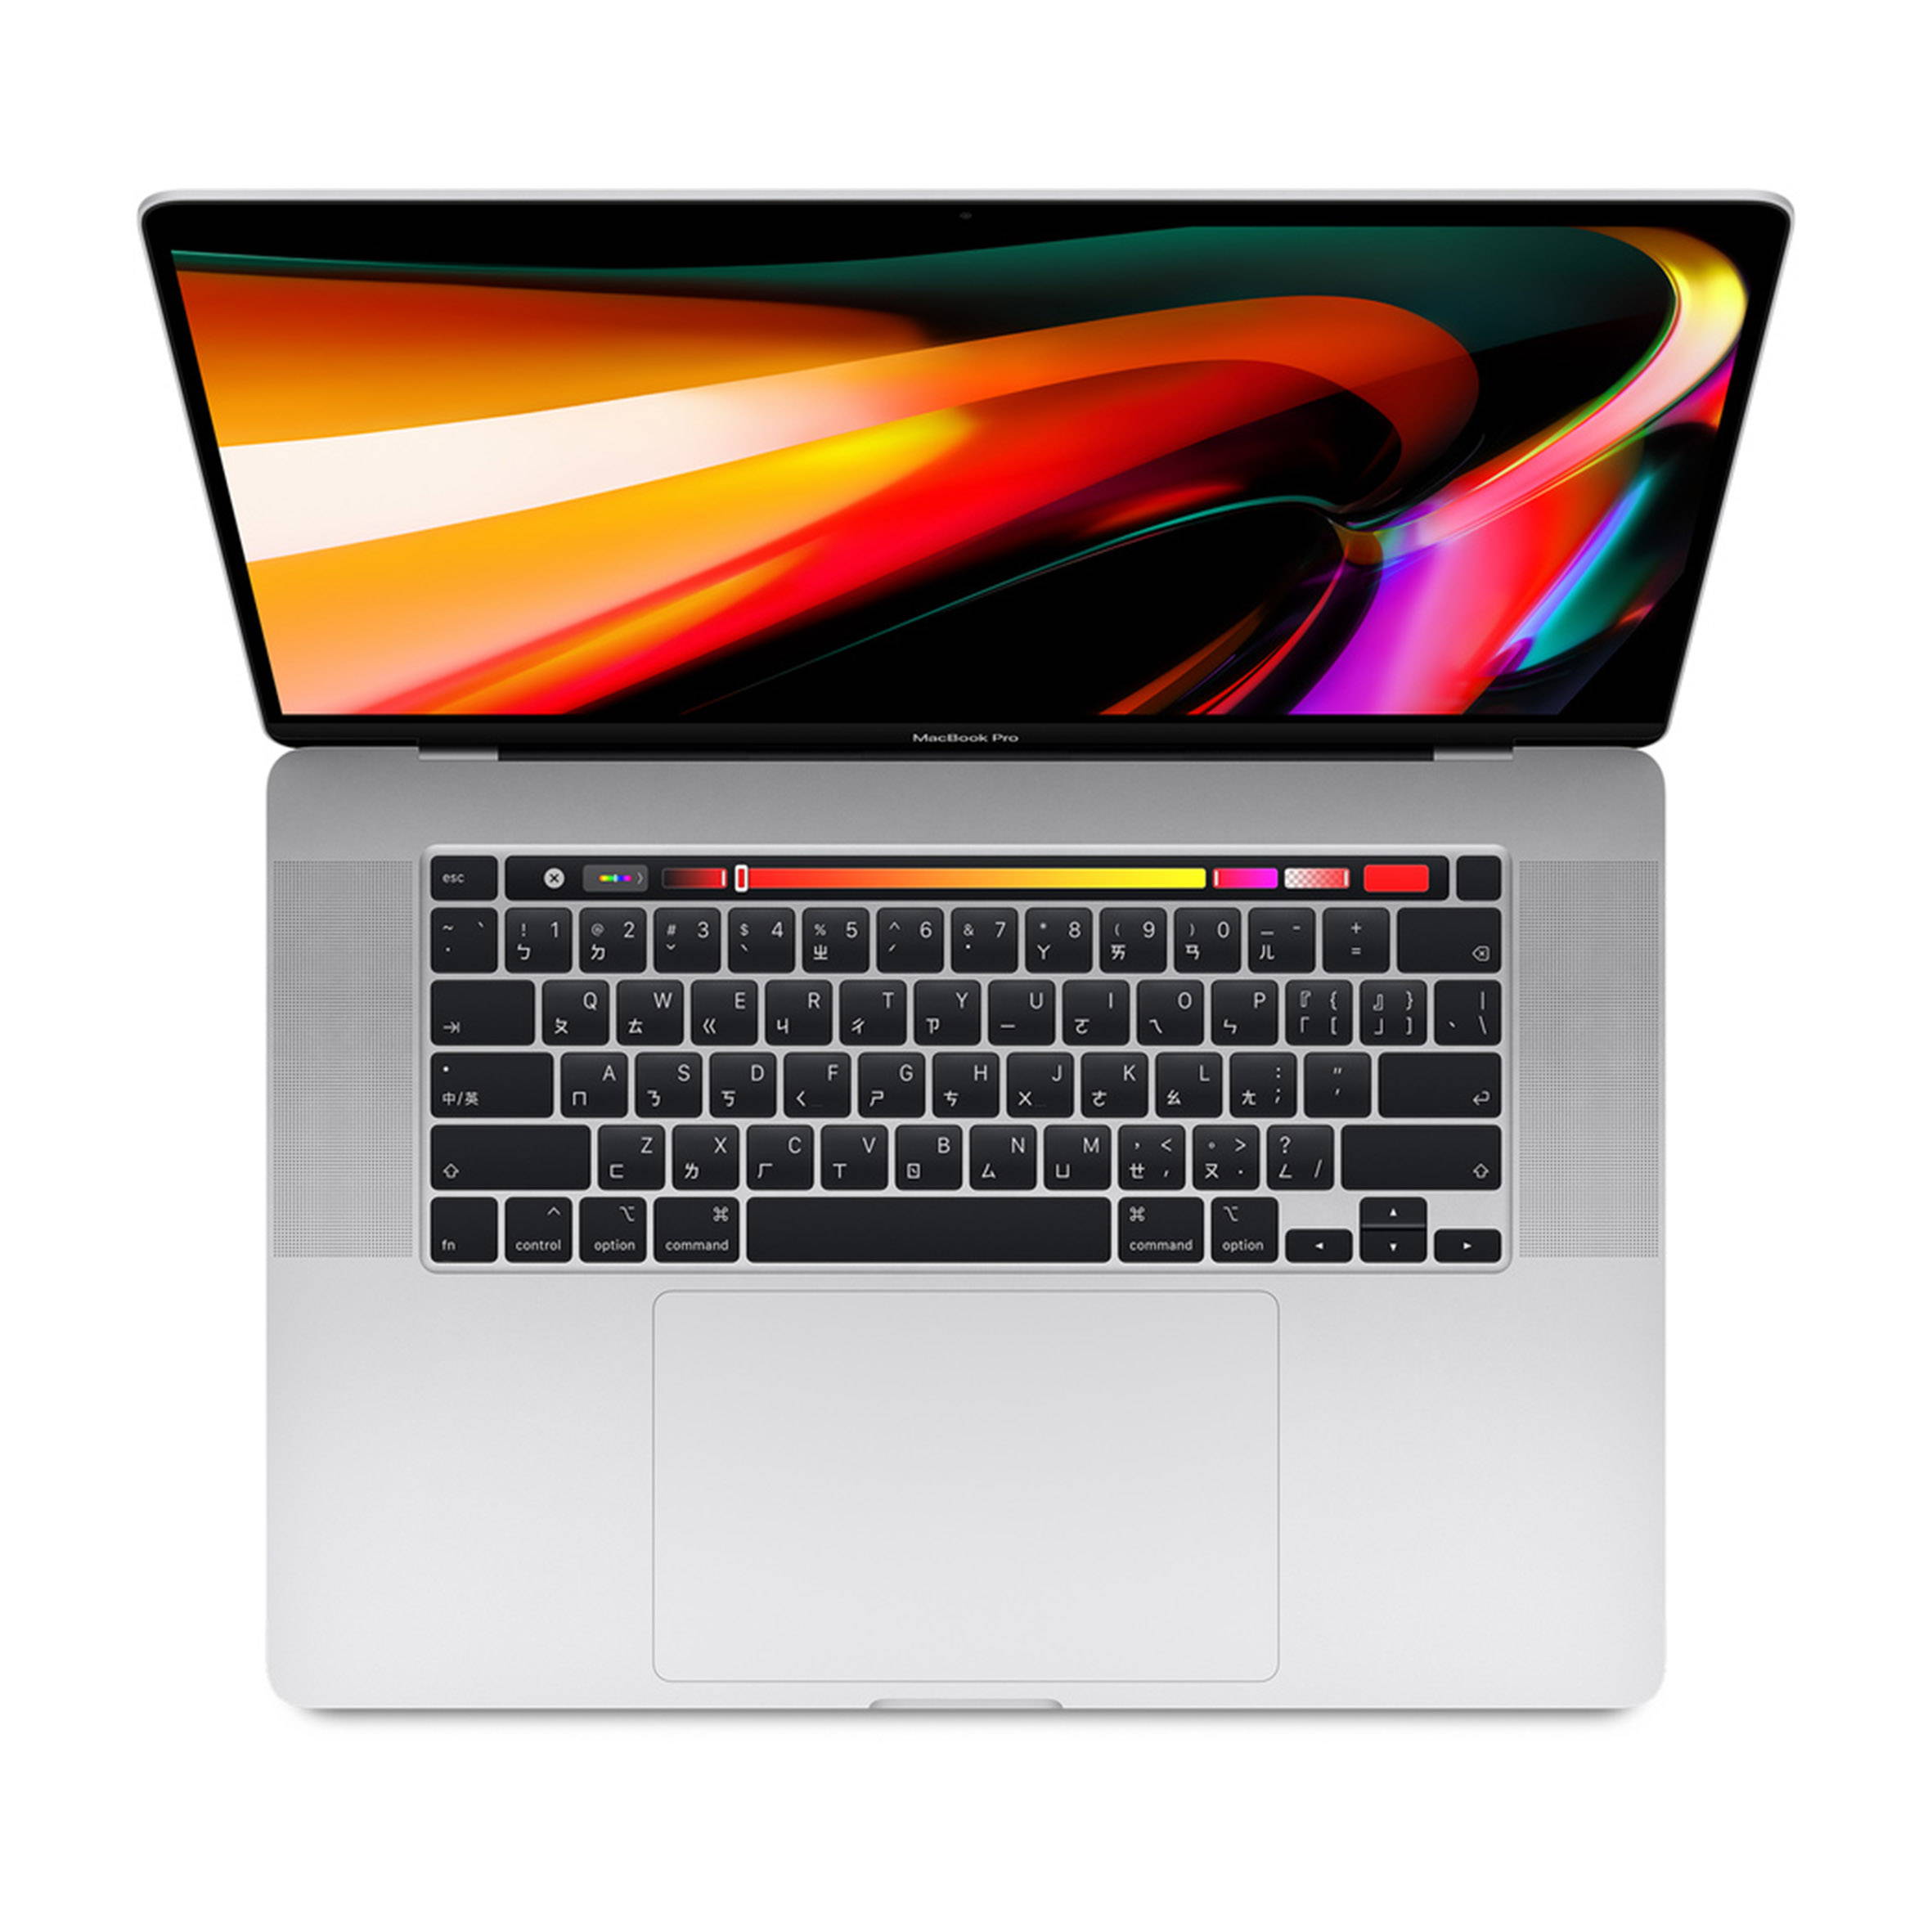 MacBook Pro 16吋 2.3GHz 1TB (2020年新款)